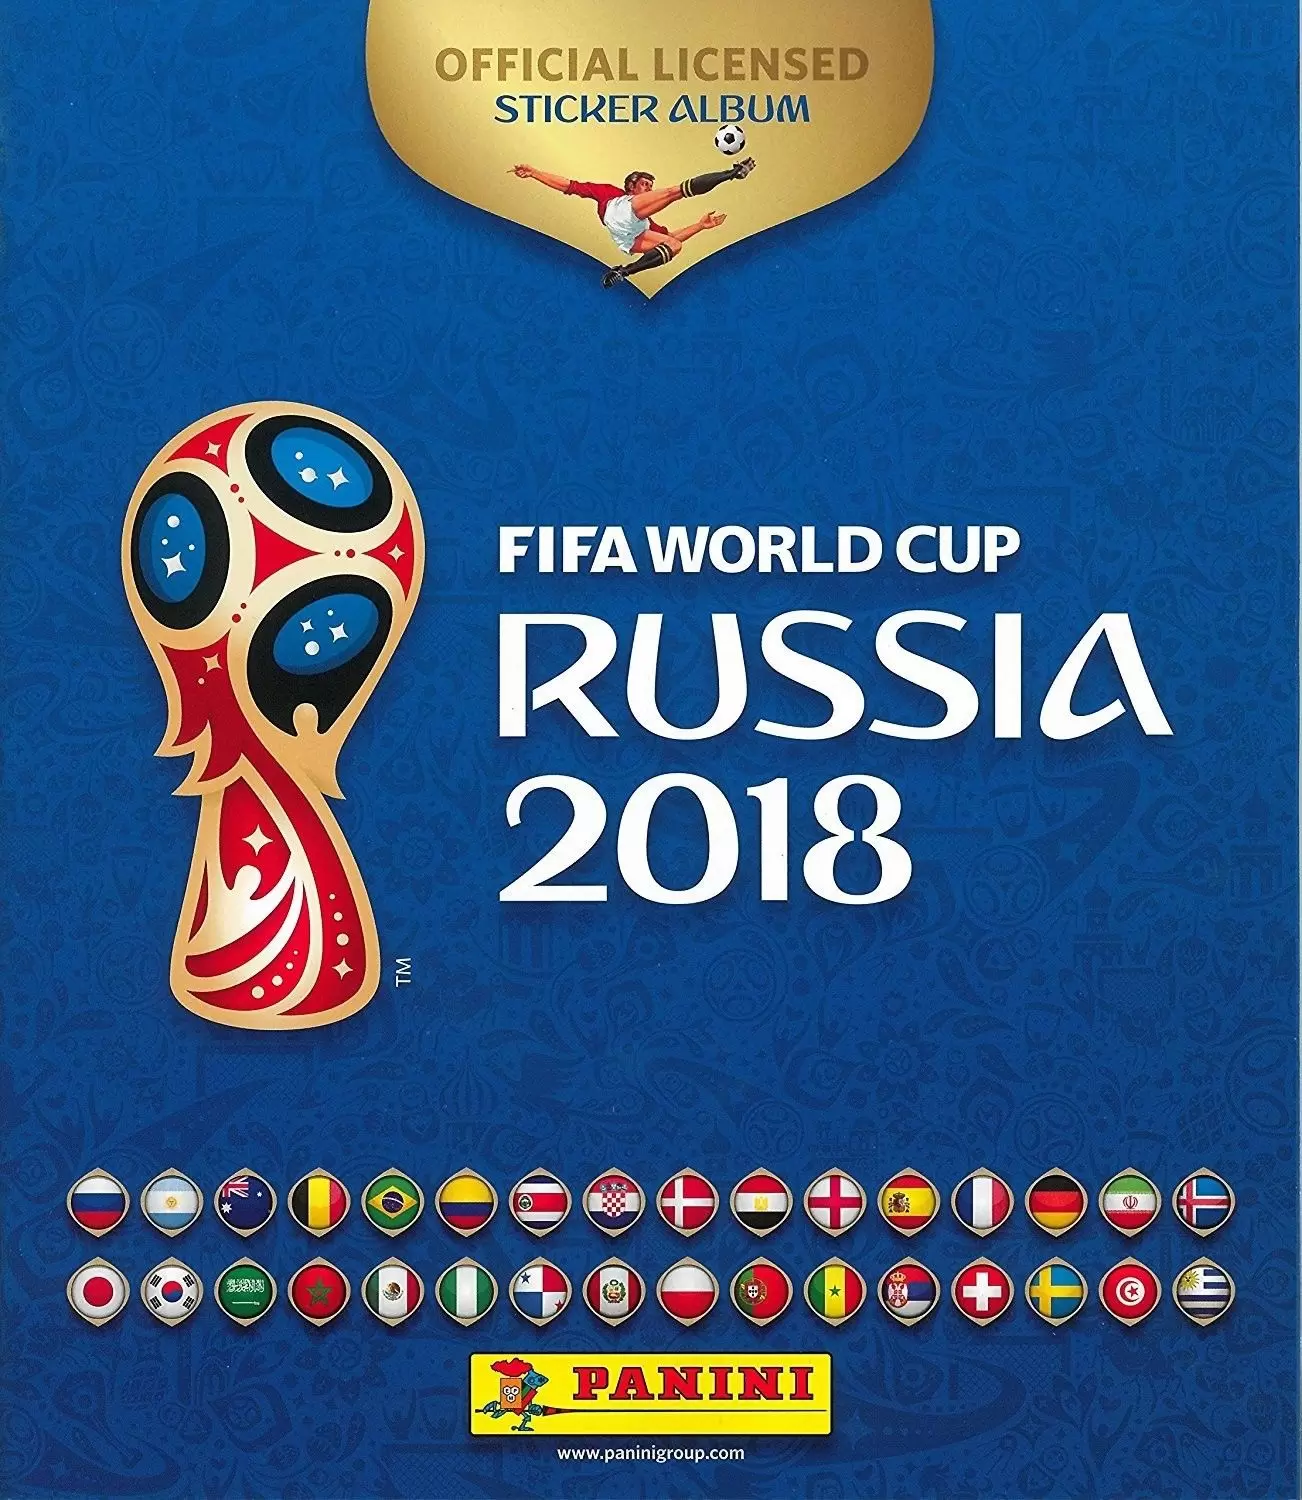 FIFA World Cup Russia 2018 - Album Russia world cup 2018